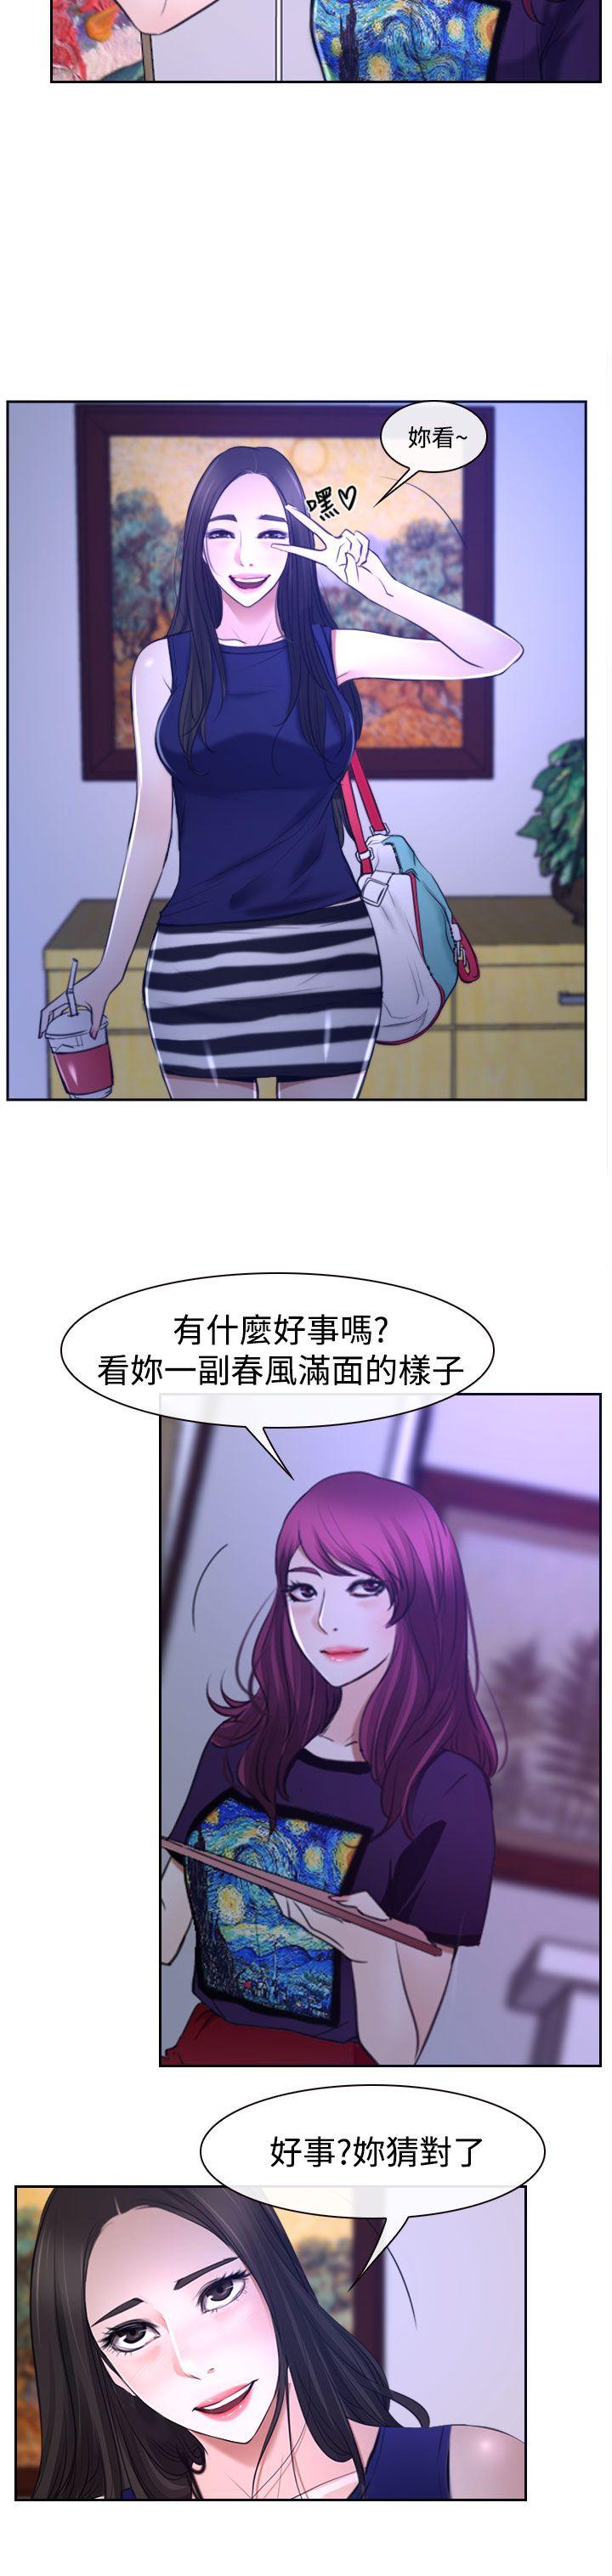 韩国污漫画 猜不透的心 第31话 49